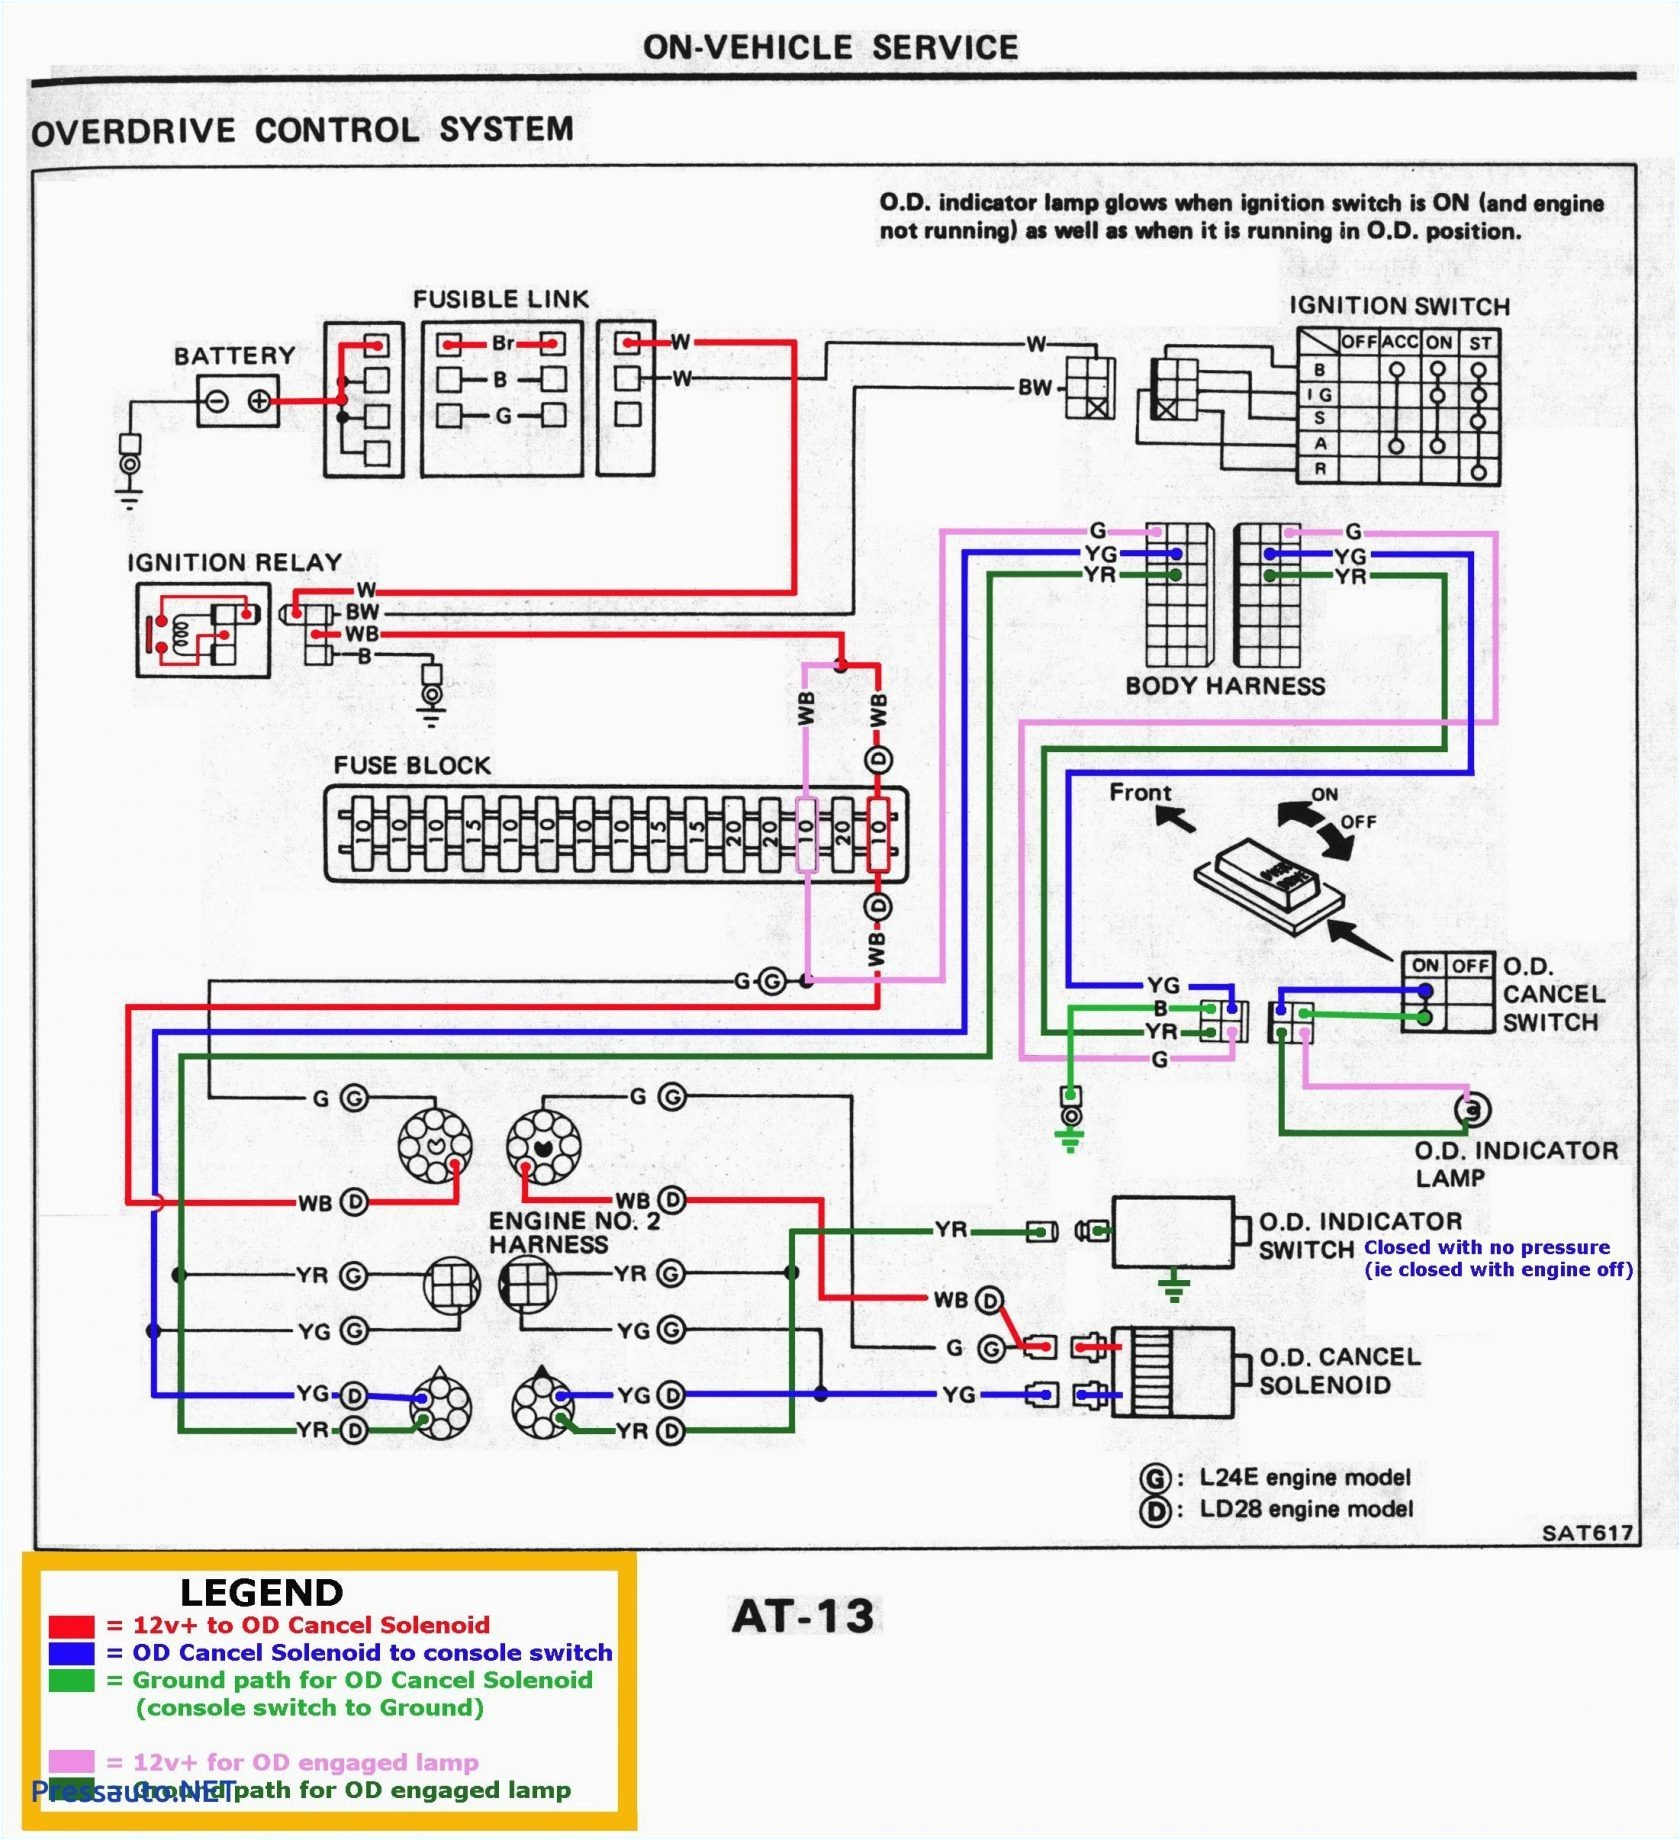 Immersion Heater Element Wiring Diagram Wiring Water Diagram Heater Rheemre13 Wiring Diagram Split